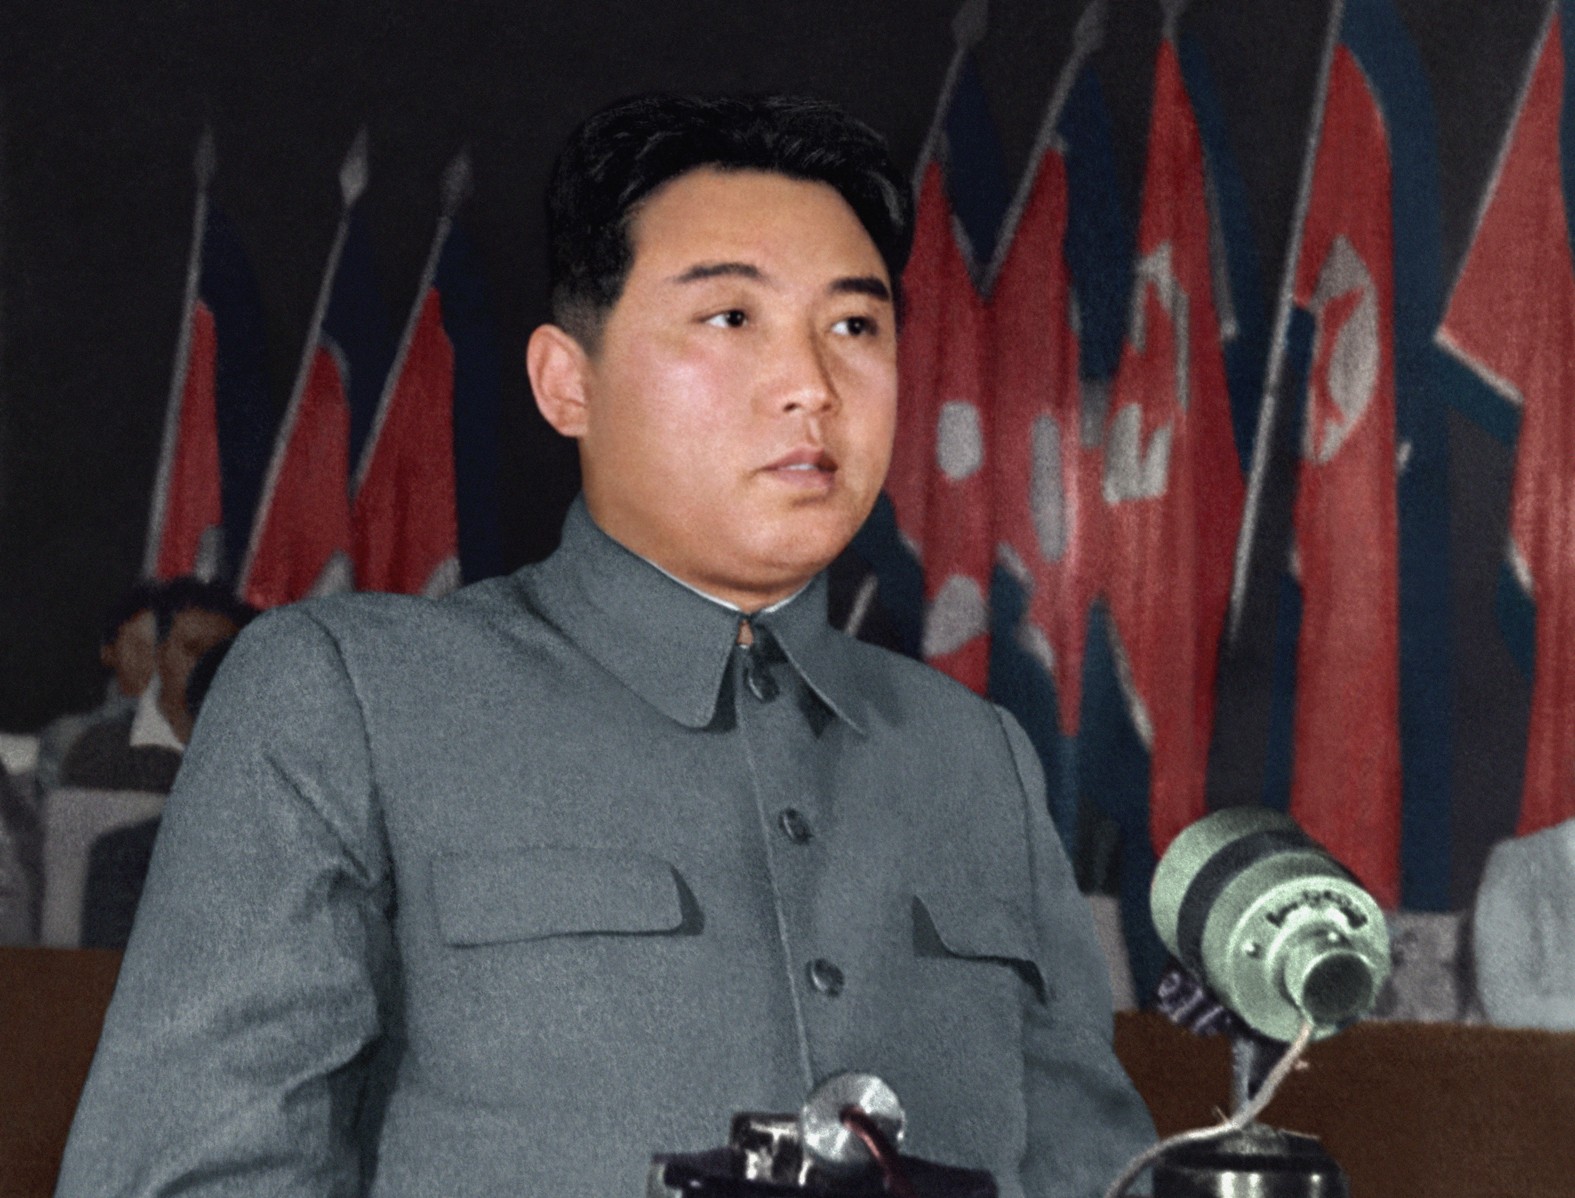 Chủ tịch Kim Nhật Thành (15/4/1912 - 8/7/1994) là nhà lãnh đạo của CHDCND Triều Tiên từ khi nước này được thành lập năm 1948 và là người đứng đầu Đảng Lao động Triều Tiên đến khi ông qua đời. Trong ảnh, Chủ tịch Kim Nhật Thành công bố Cương lĩnh Chính trị của Chính phủ tại Họi nghị thứ nhất